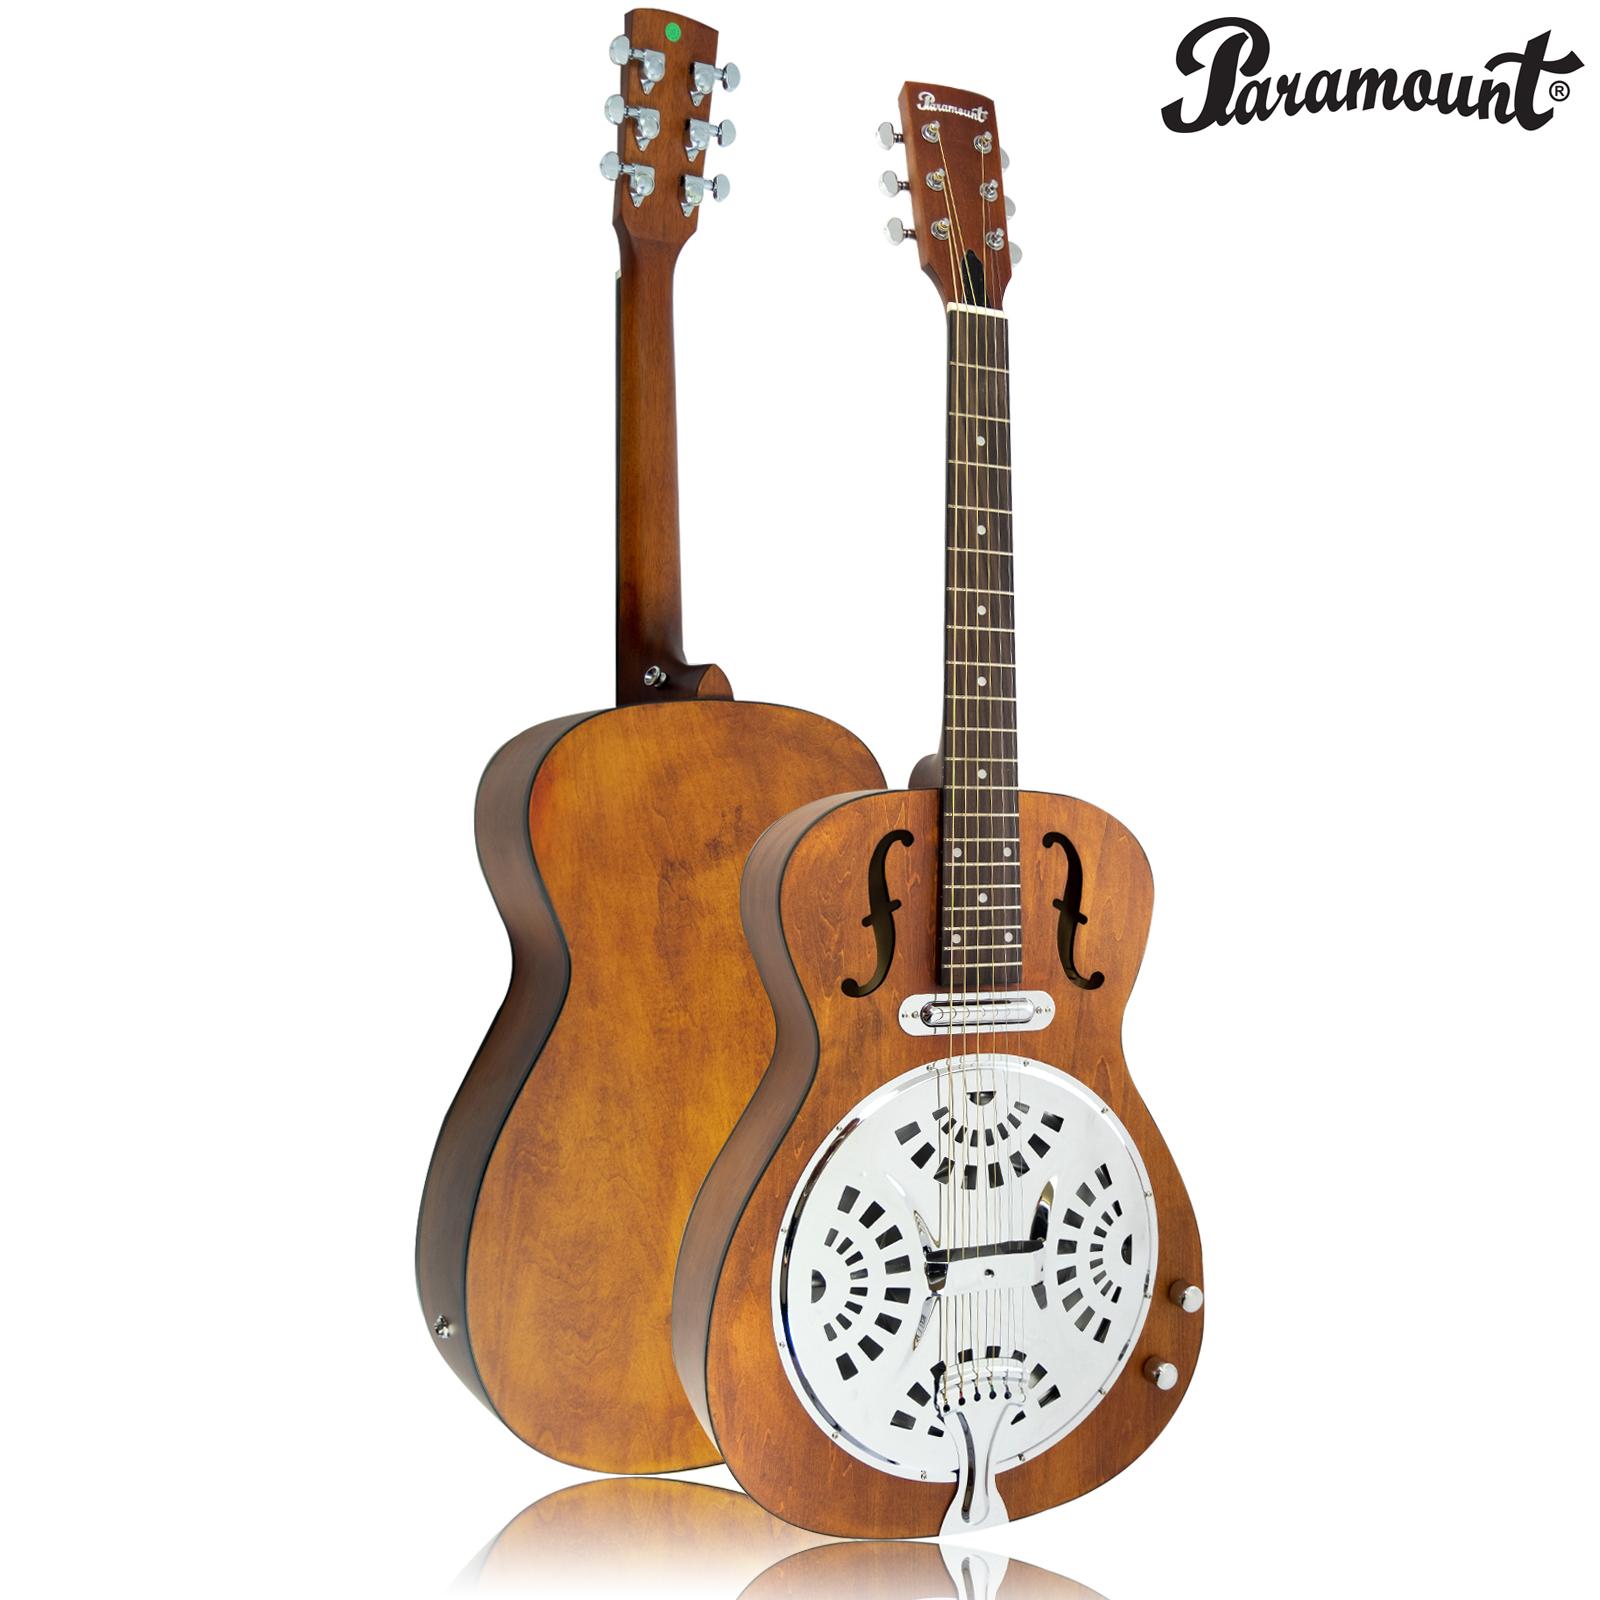 Paramount กีตาร์โปร่งไฟฟ้า 41 นิ้ว แบบ Resonator Guitar รุ่น SDG-722E (Drobo-Style Guitar) + แถมฟรีสายแจ็คกีตาร์